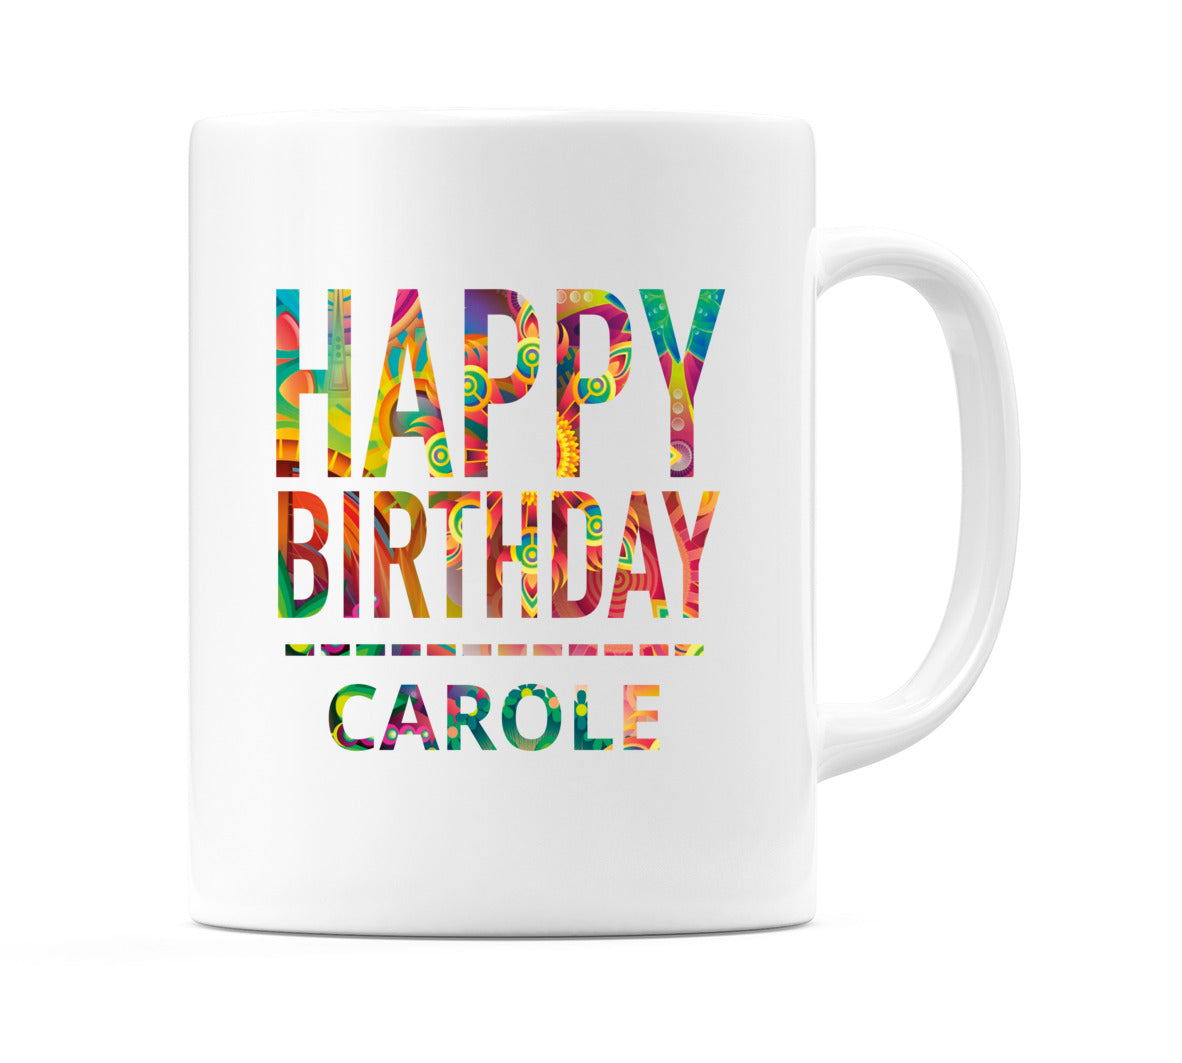 Happy Birthday Carole (Tie Dye Effect) Mug Cup by WeDoMugs